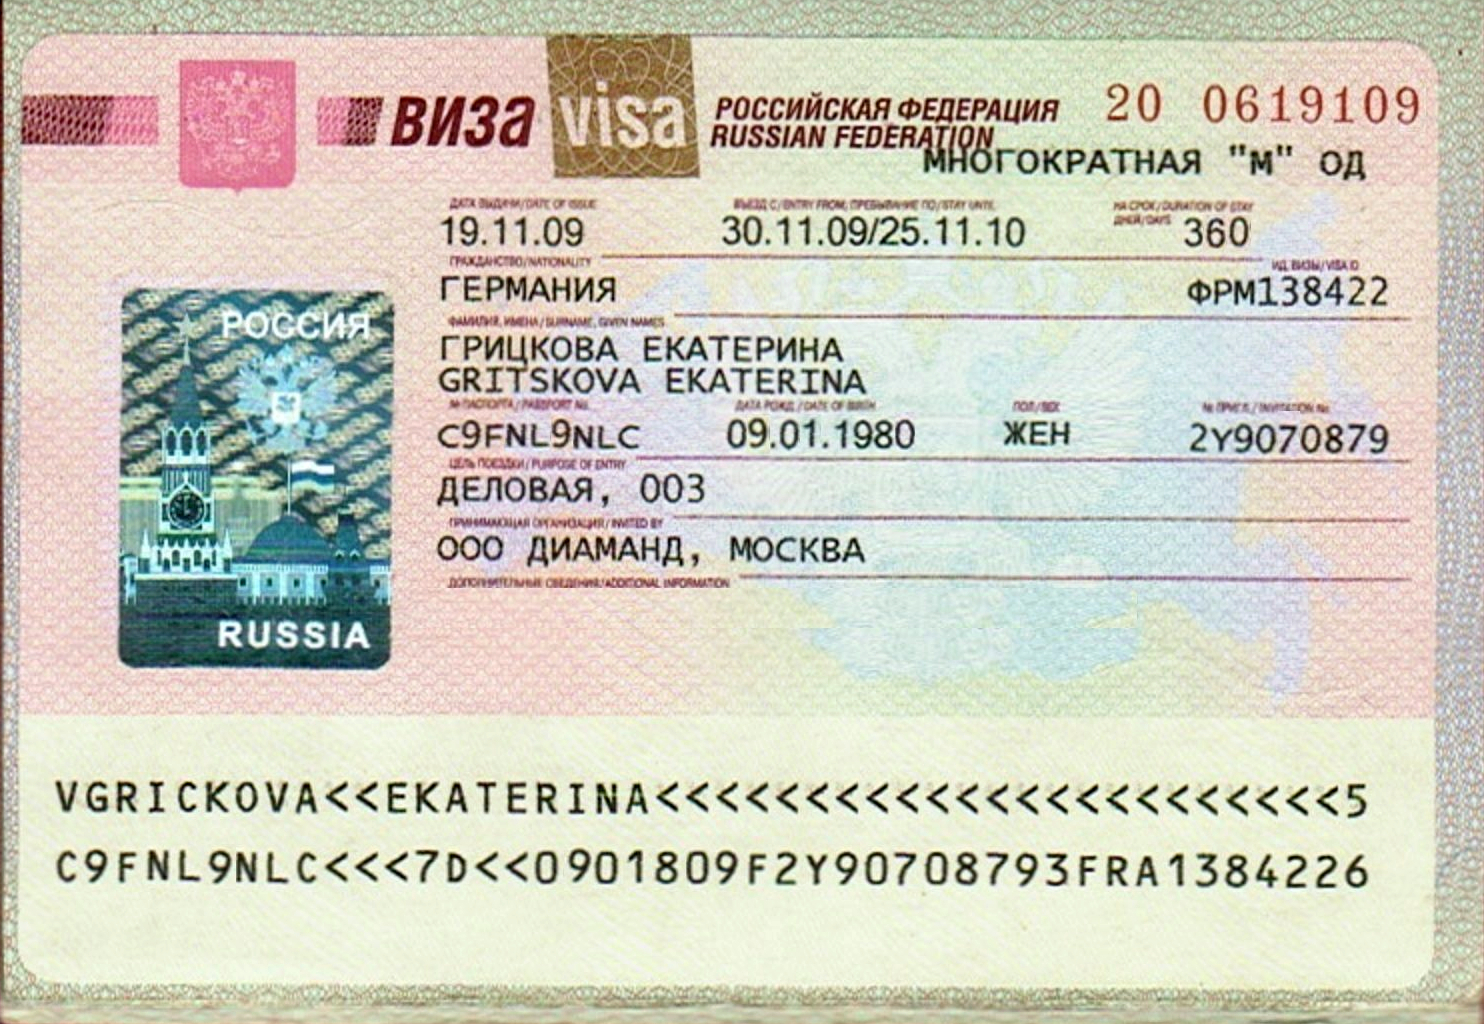 Рабочая виза в россию для иностранцев — оформление документов и получение в 2020 году